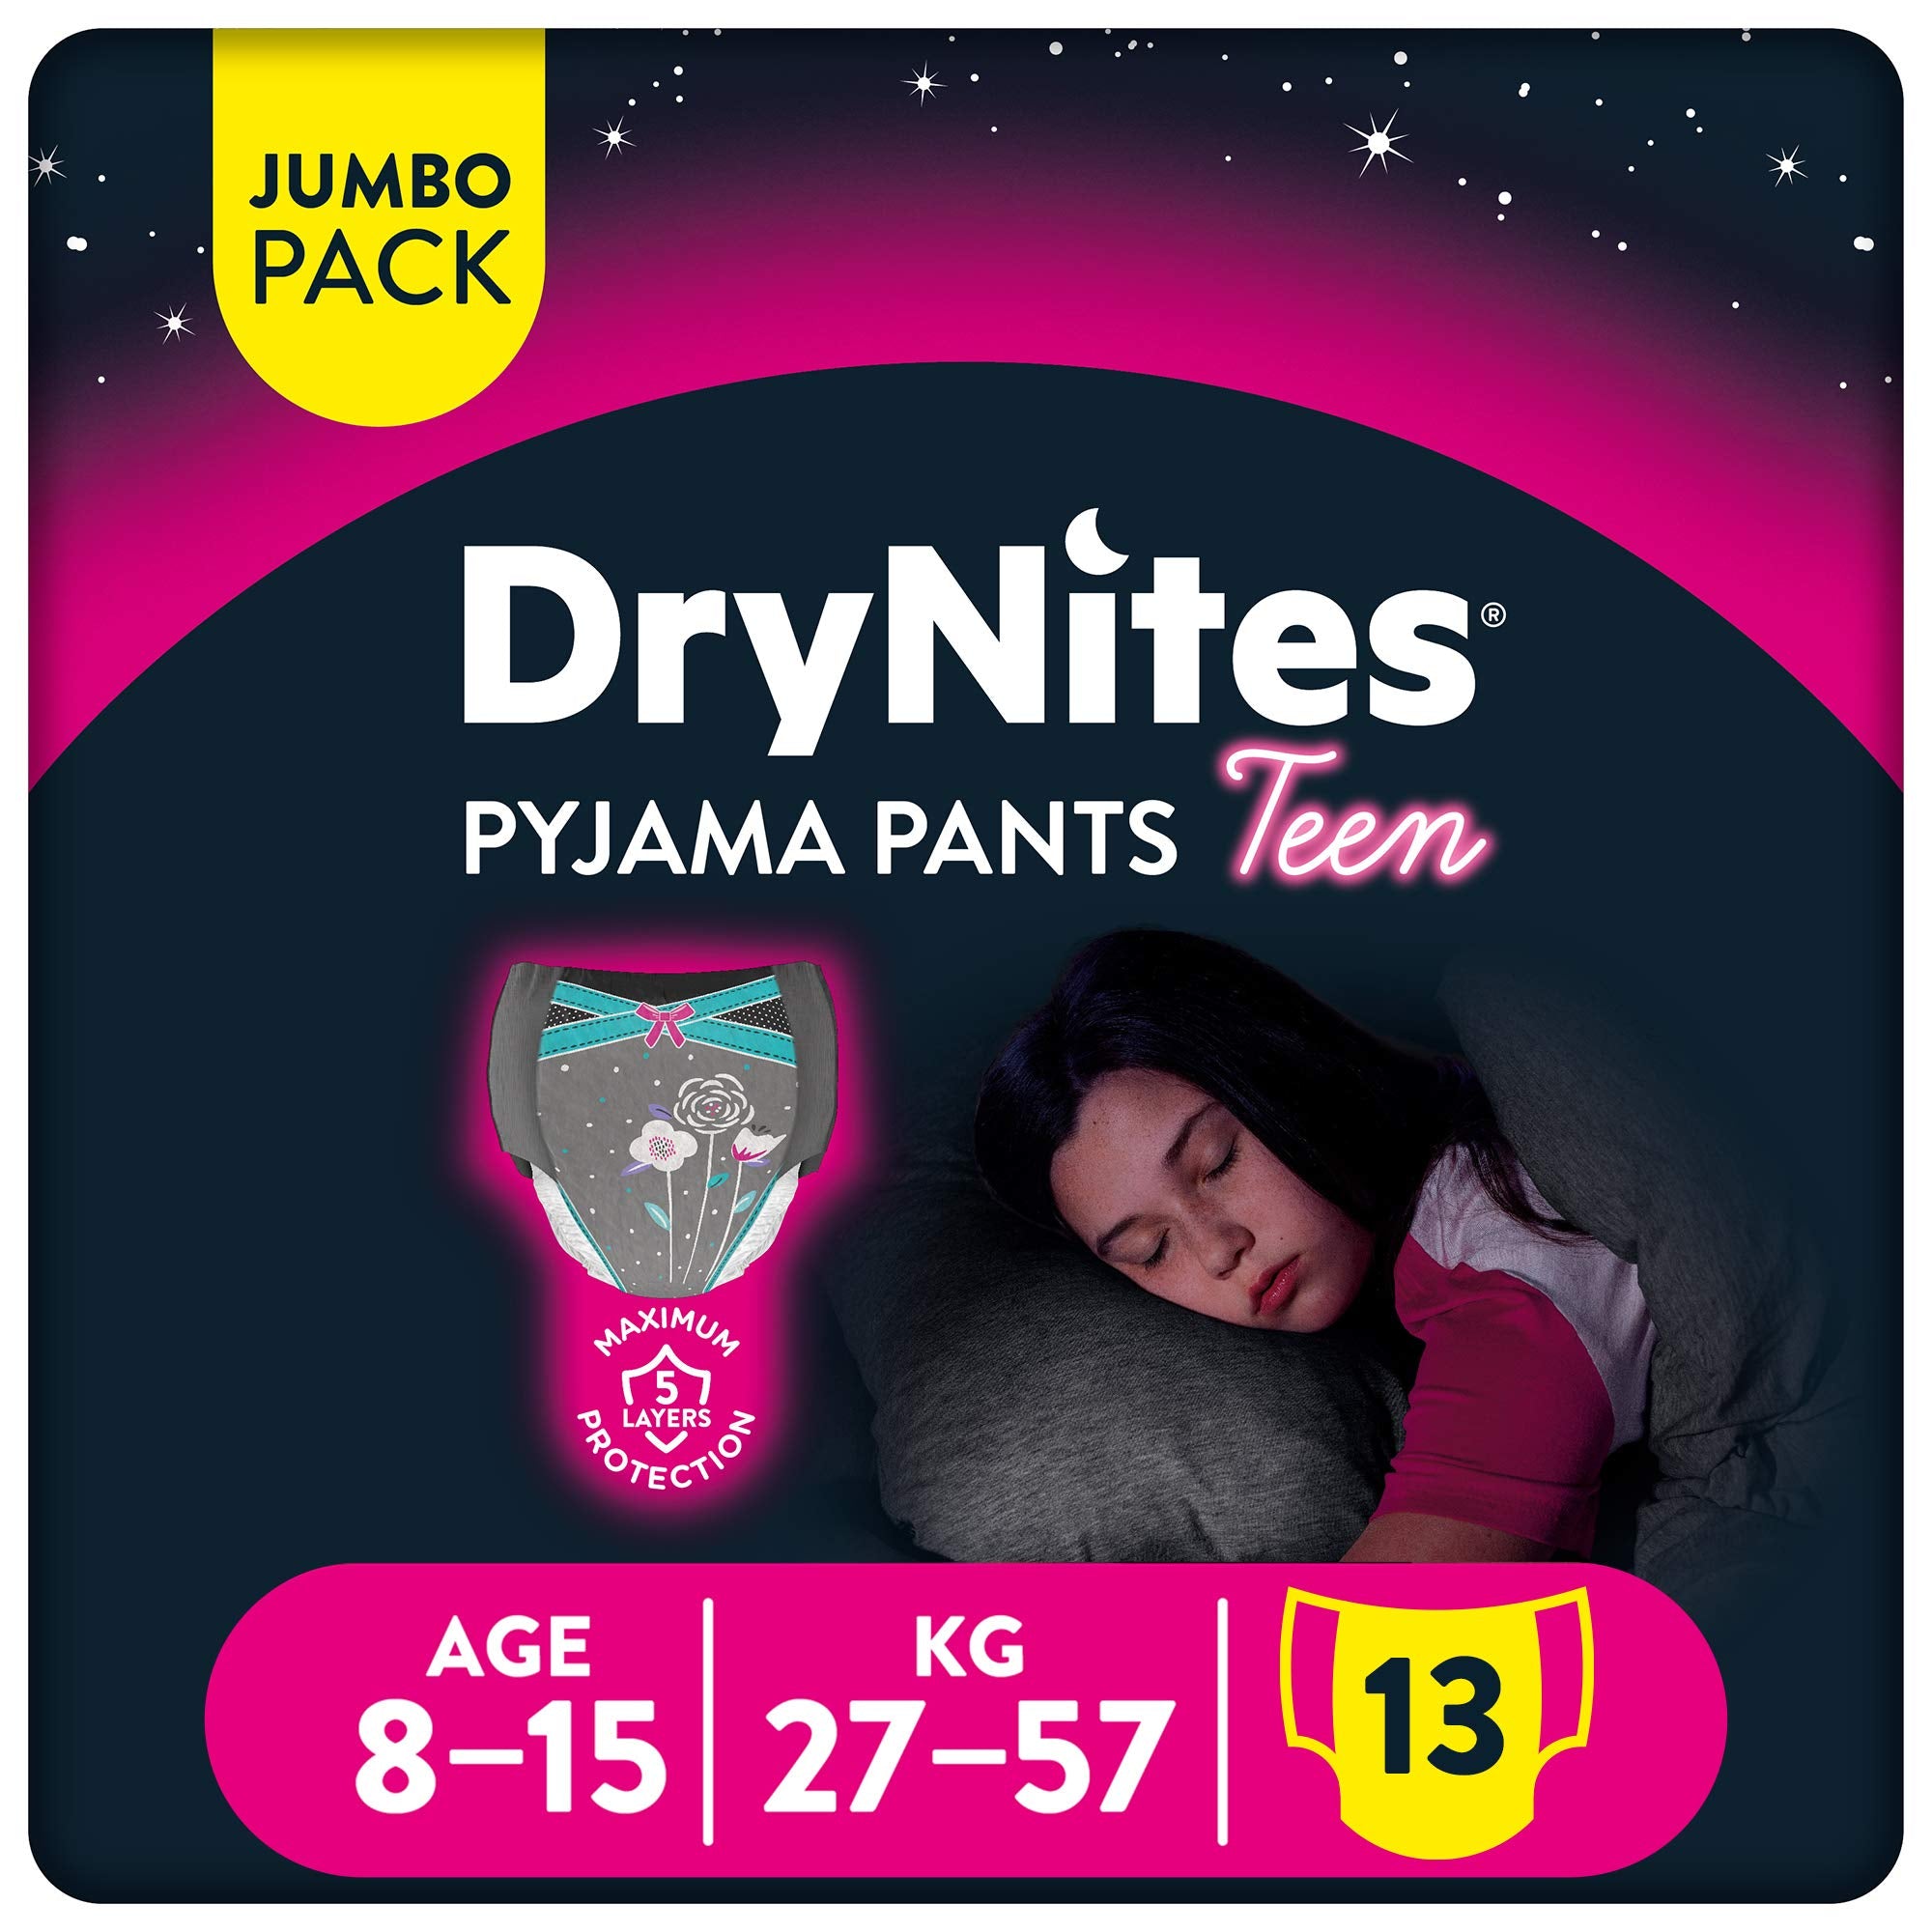 Drynites Pyjama Pants, Age 8-15 Y, Girl, 27-57 Kg, 13 Bed Wetting Pants